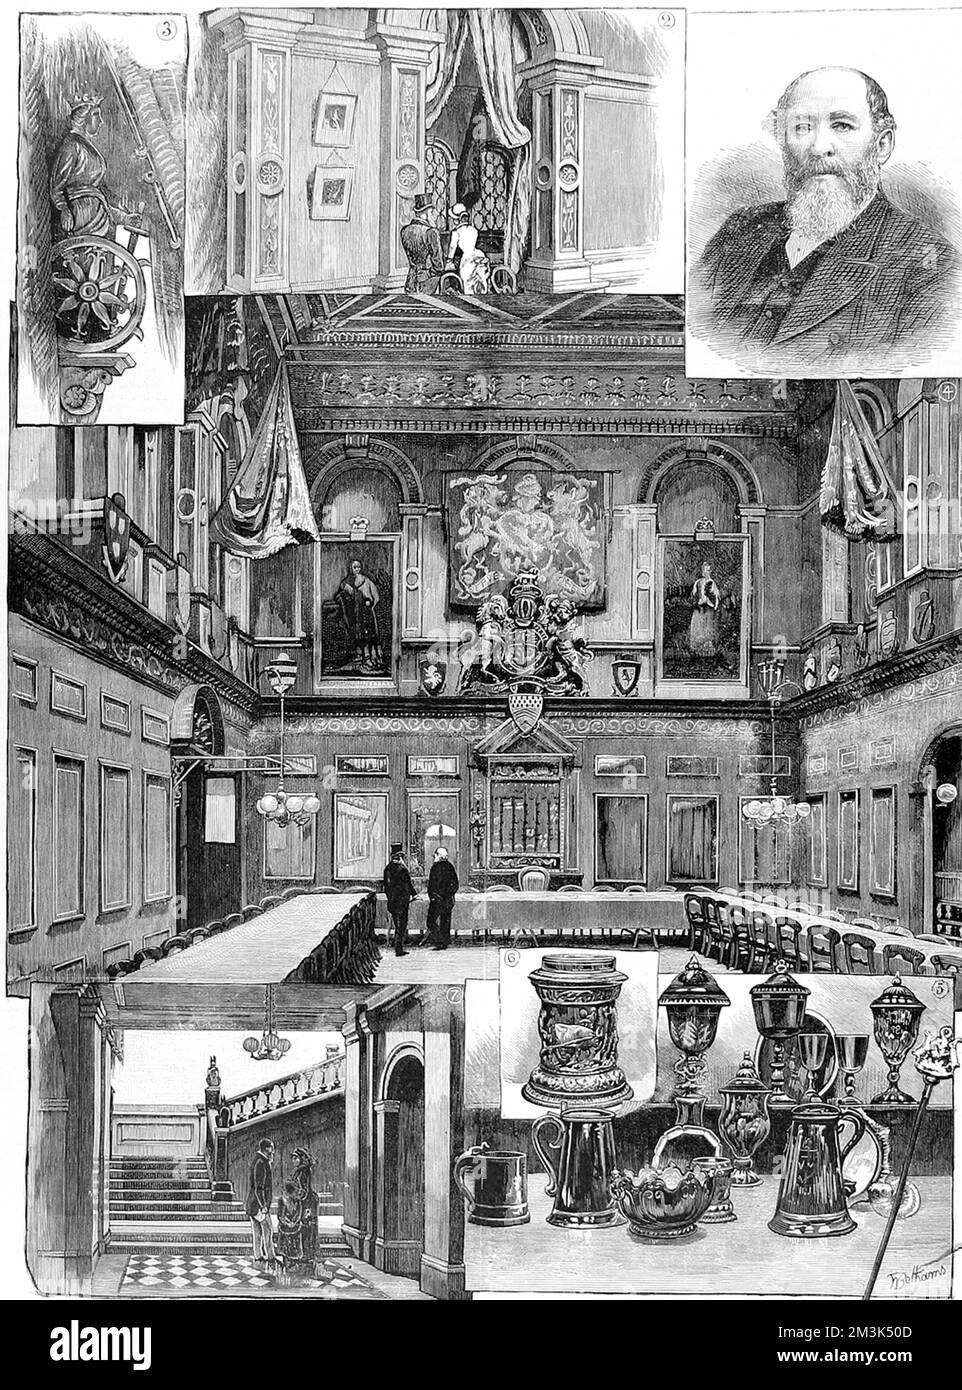 Eine Reihe von Szenen, die mit der Haberdashers' Company, einer der London City Guilds, in Verbindung stehen. Datum: 1884 Stockfoto